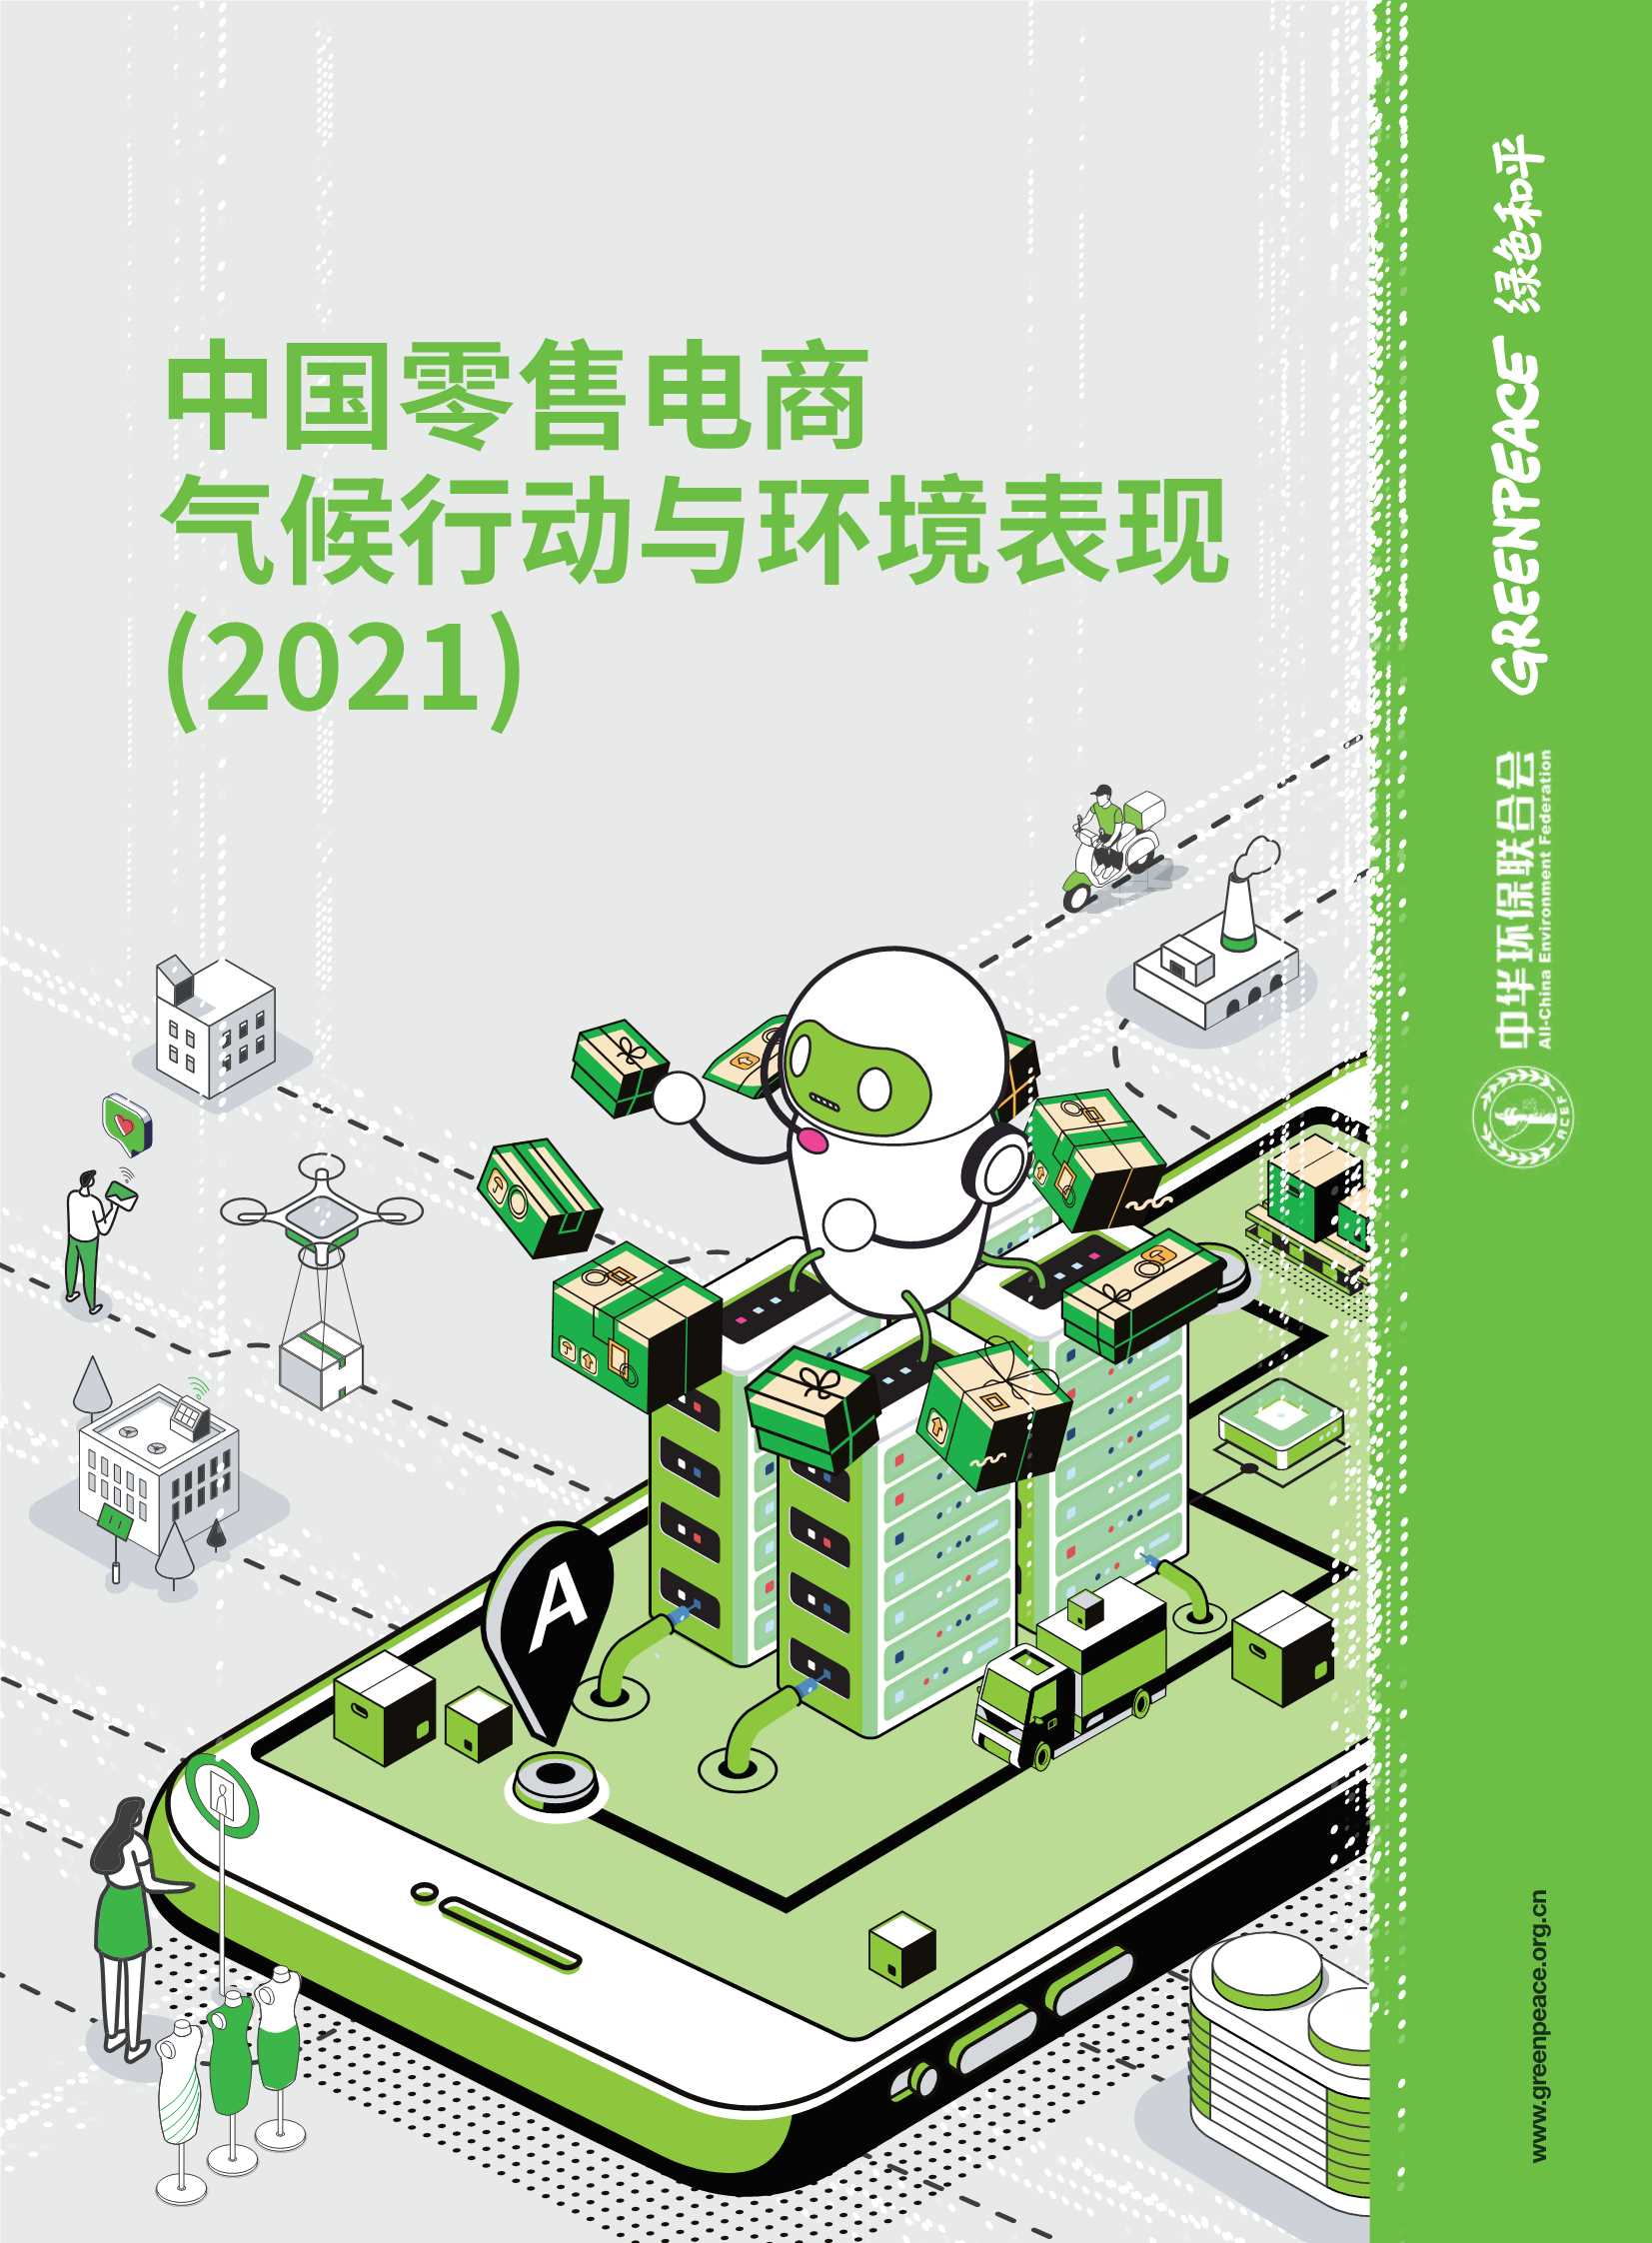 绿色和平-2021中国零售电商气候行动与环境表现-2022.03-44页